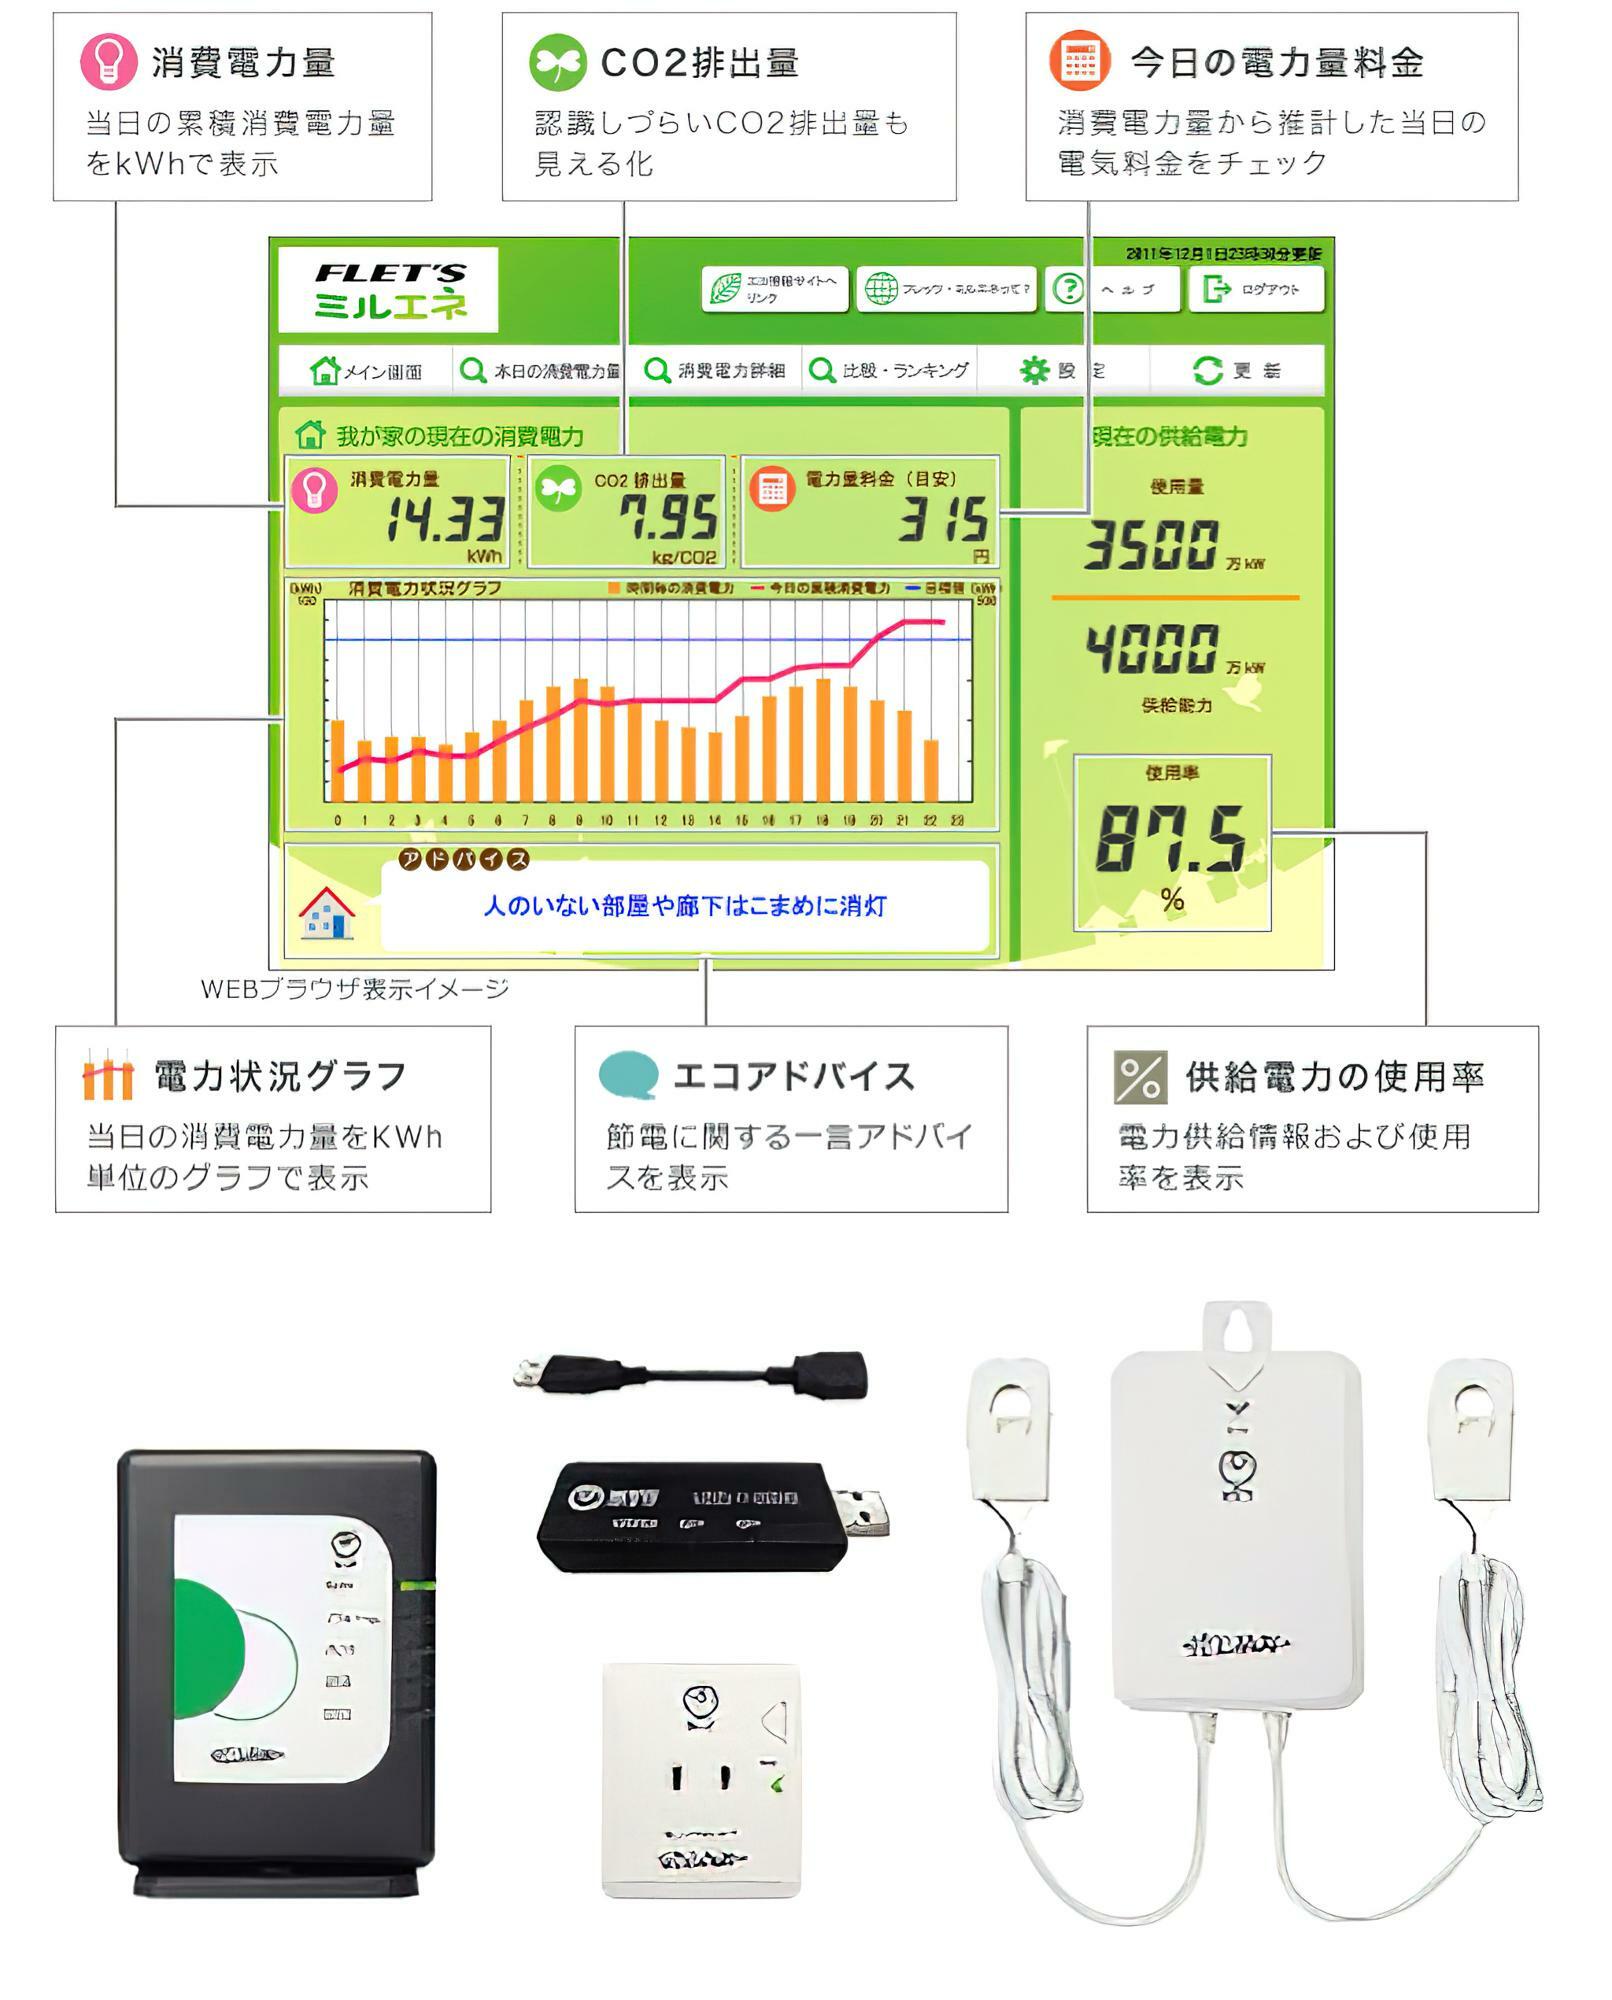 NTTのミルエネ。一部貸出ですが、コンセント端末などは約4,000円/個のものを買う必要あり引用：NTT東日本 FLET’S光（https://flets.com/eco/miruene/）